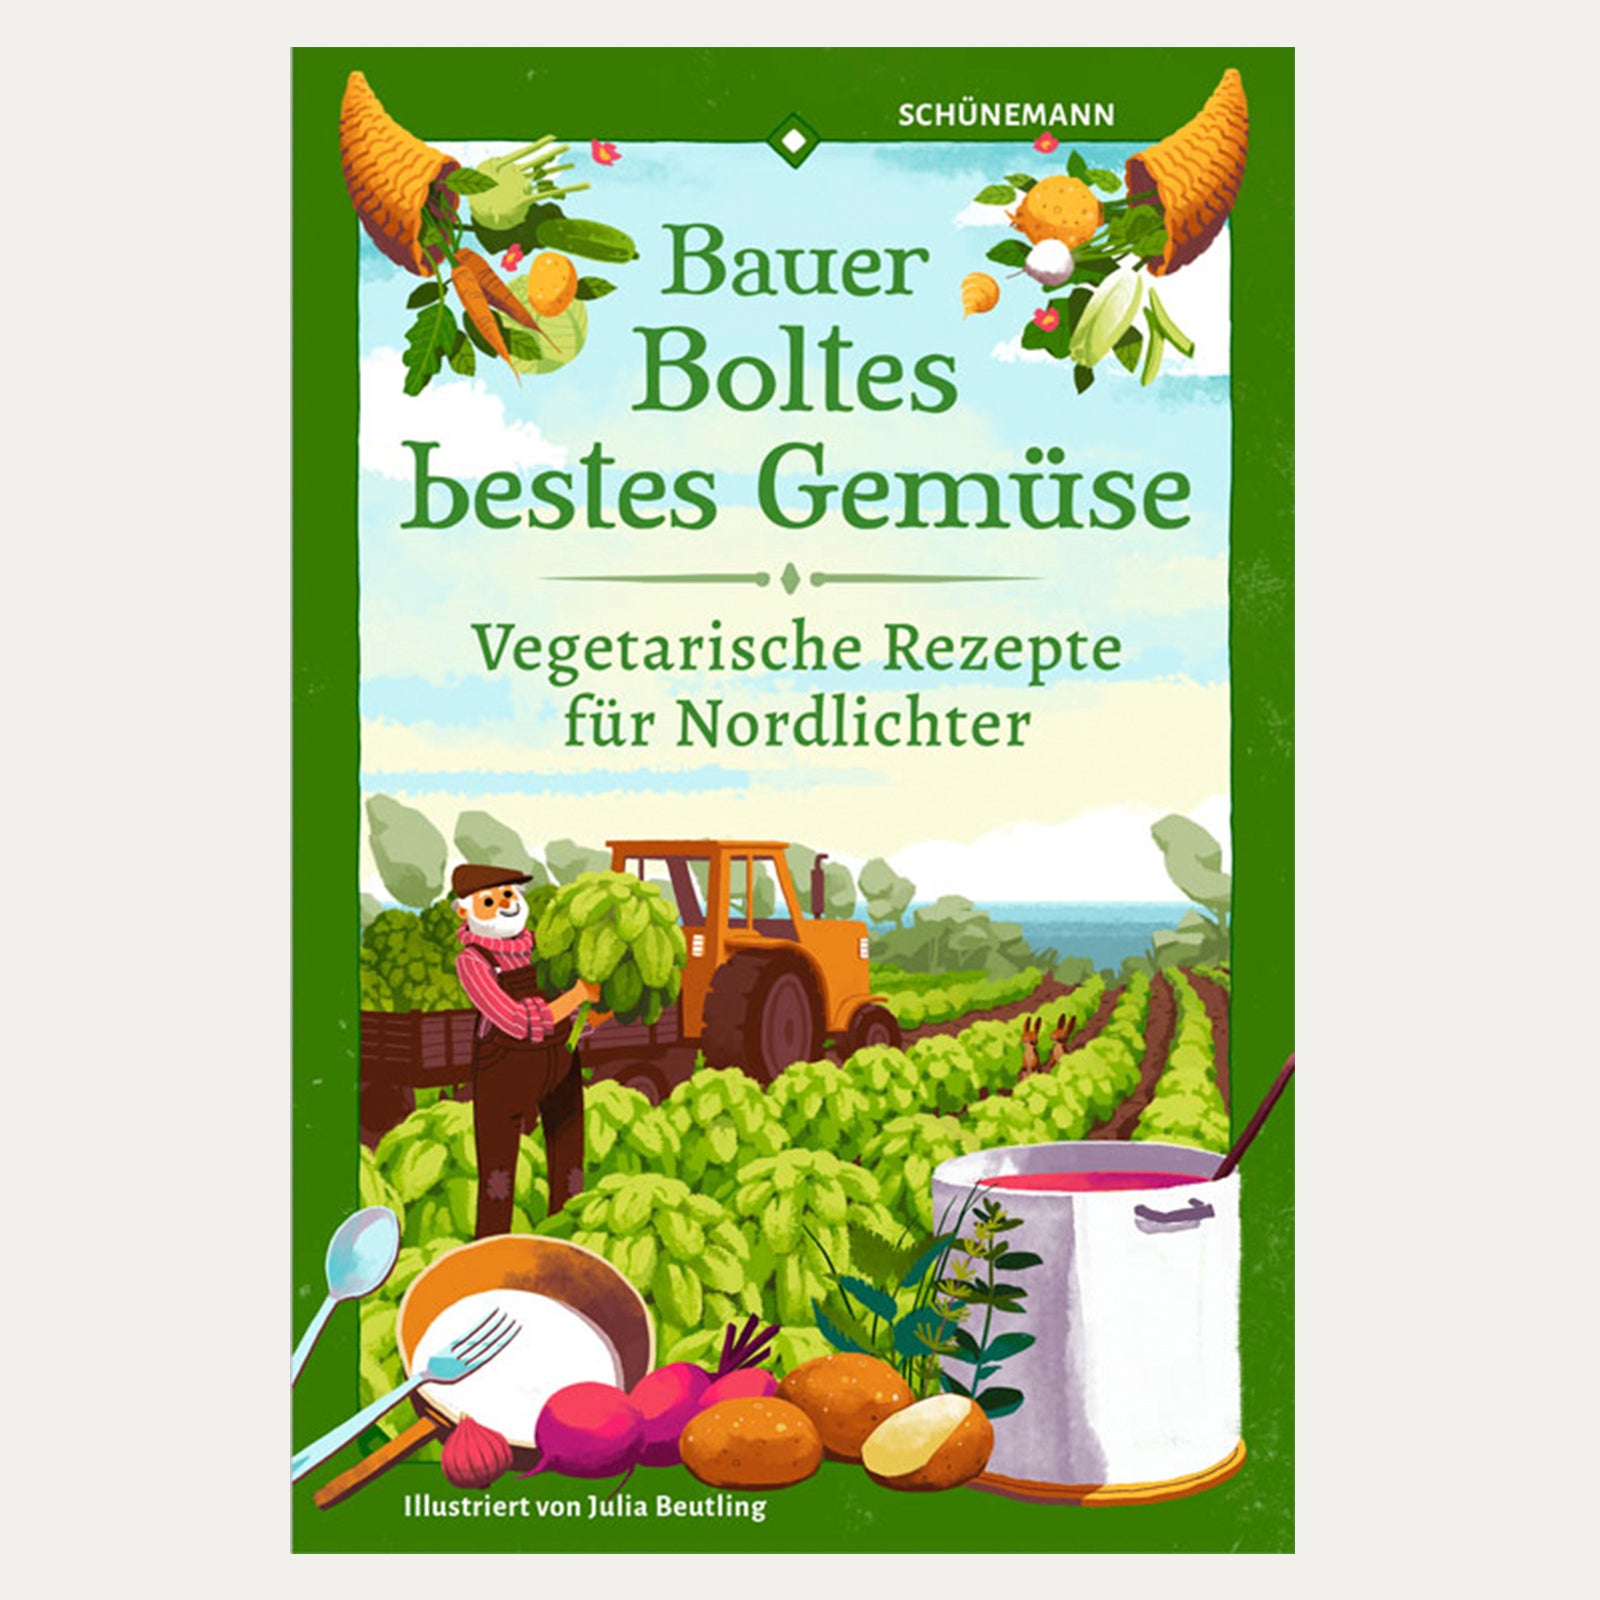 Bauer Boltes bestes Gemüse - Kochbuch